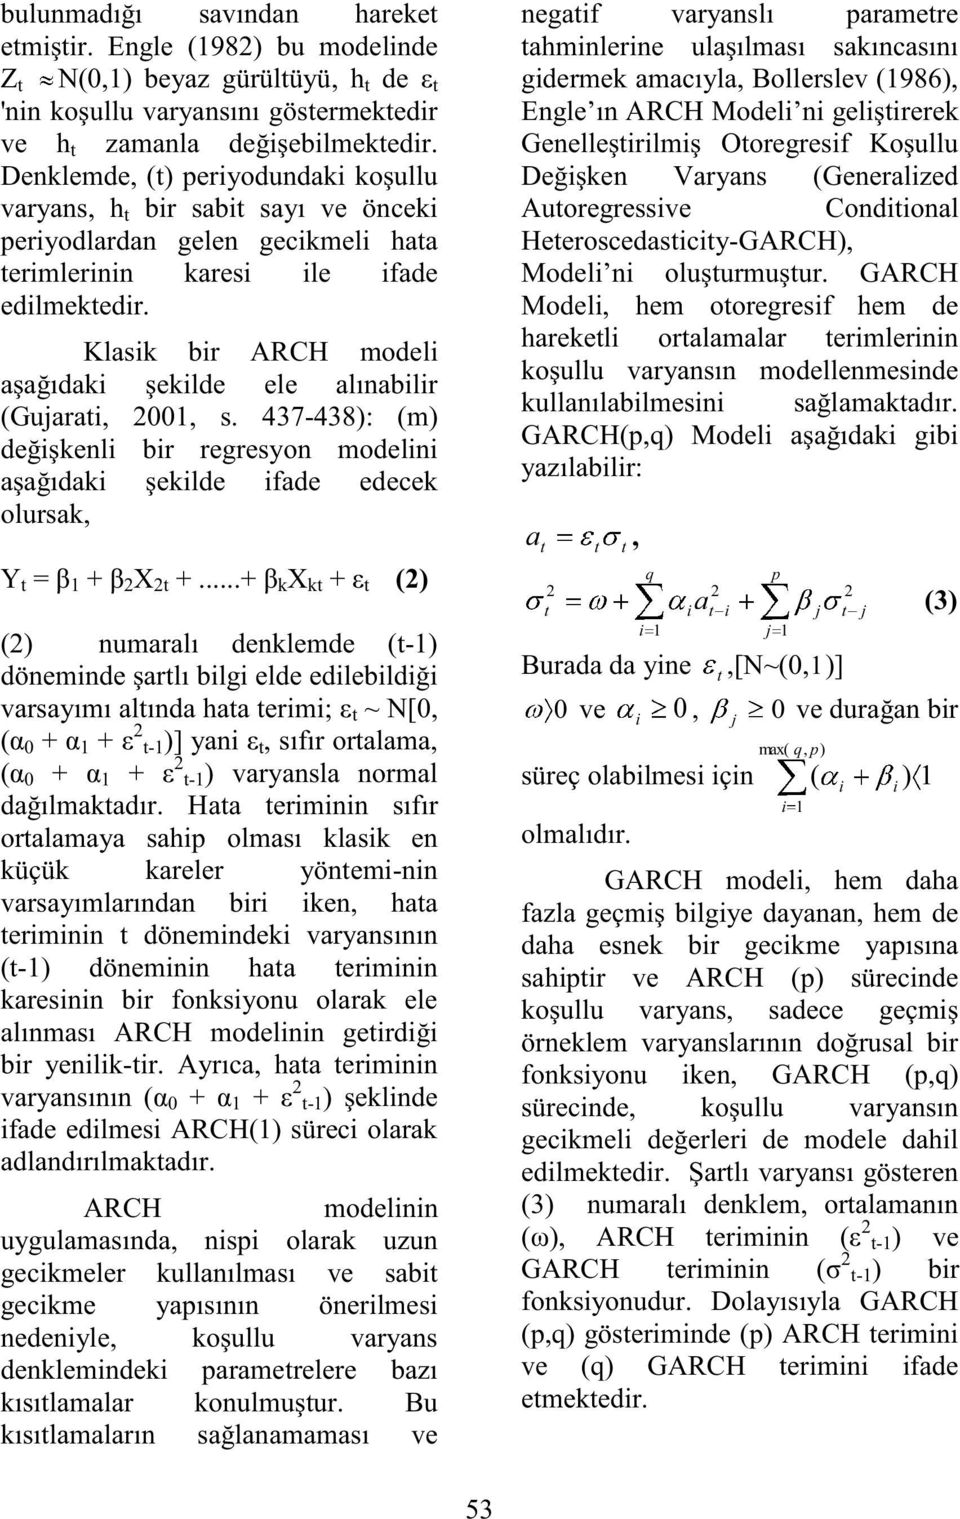 Klasik bir ARCH modeli aşağıdaki şekilde ele alınabilir (Gujarai, 2001, s. 437-438): (m) değişkenli bir regresyon modelini aşağıdaki şekilde ifade edecek olursak, Y = β 1 + β 2 X 2 +.